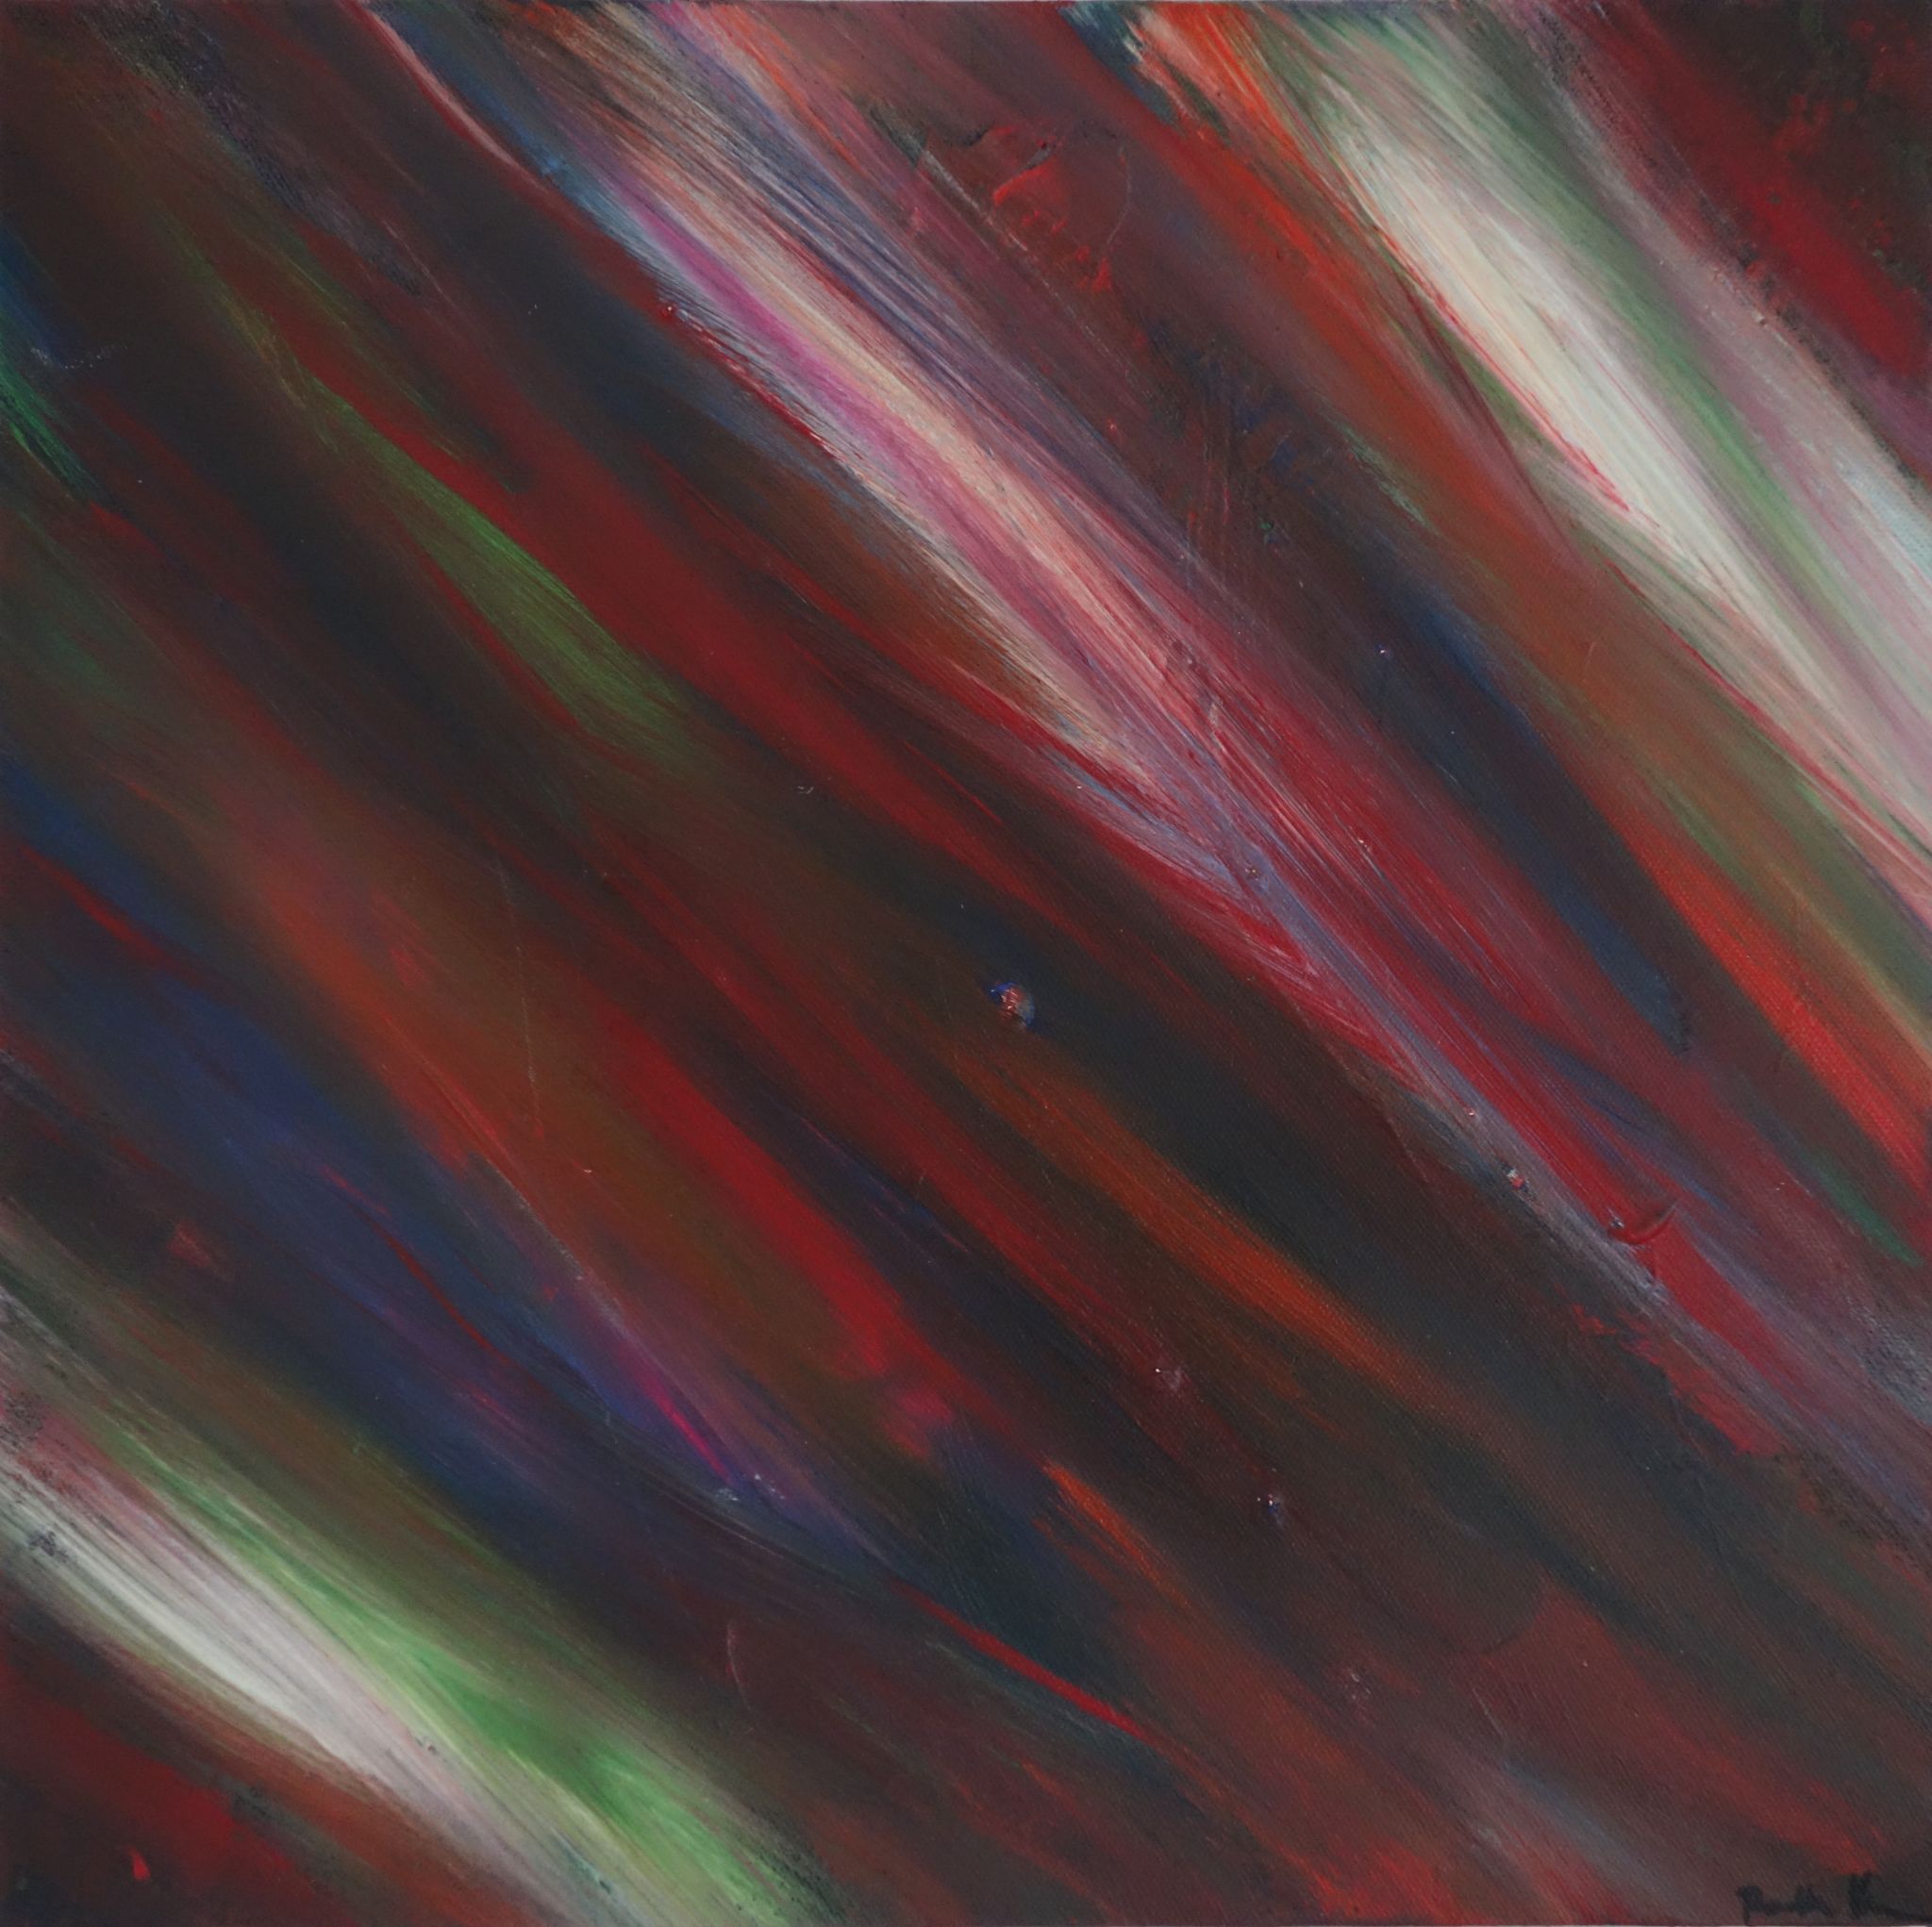 duhová závěj, 40/40 cm, 2013, akryl na plátně